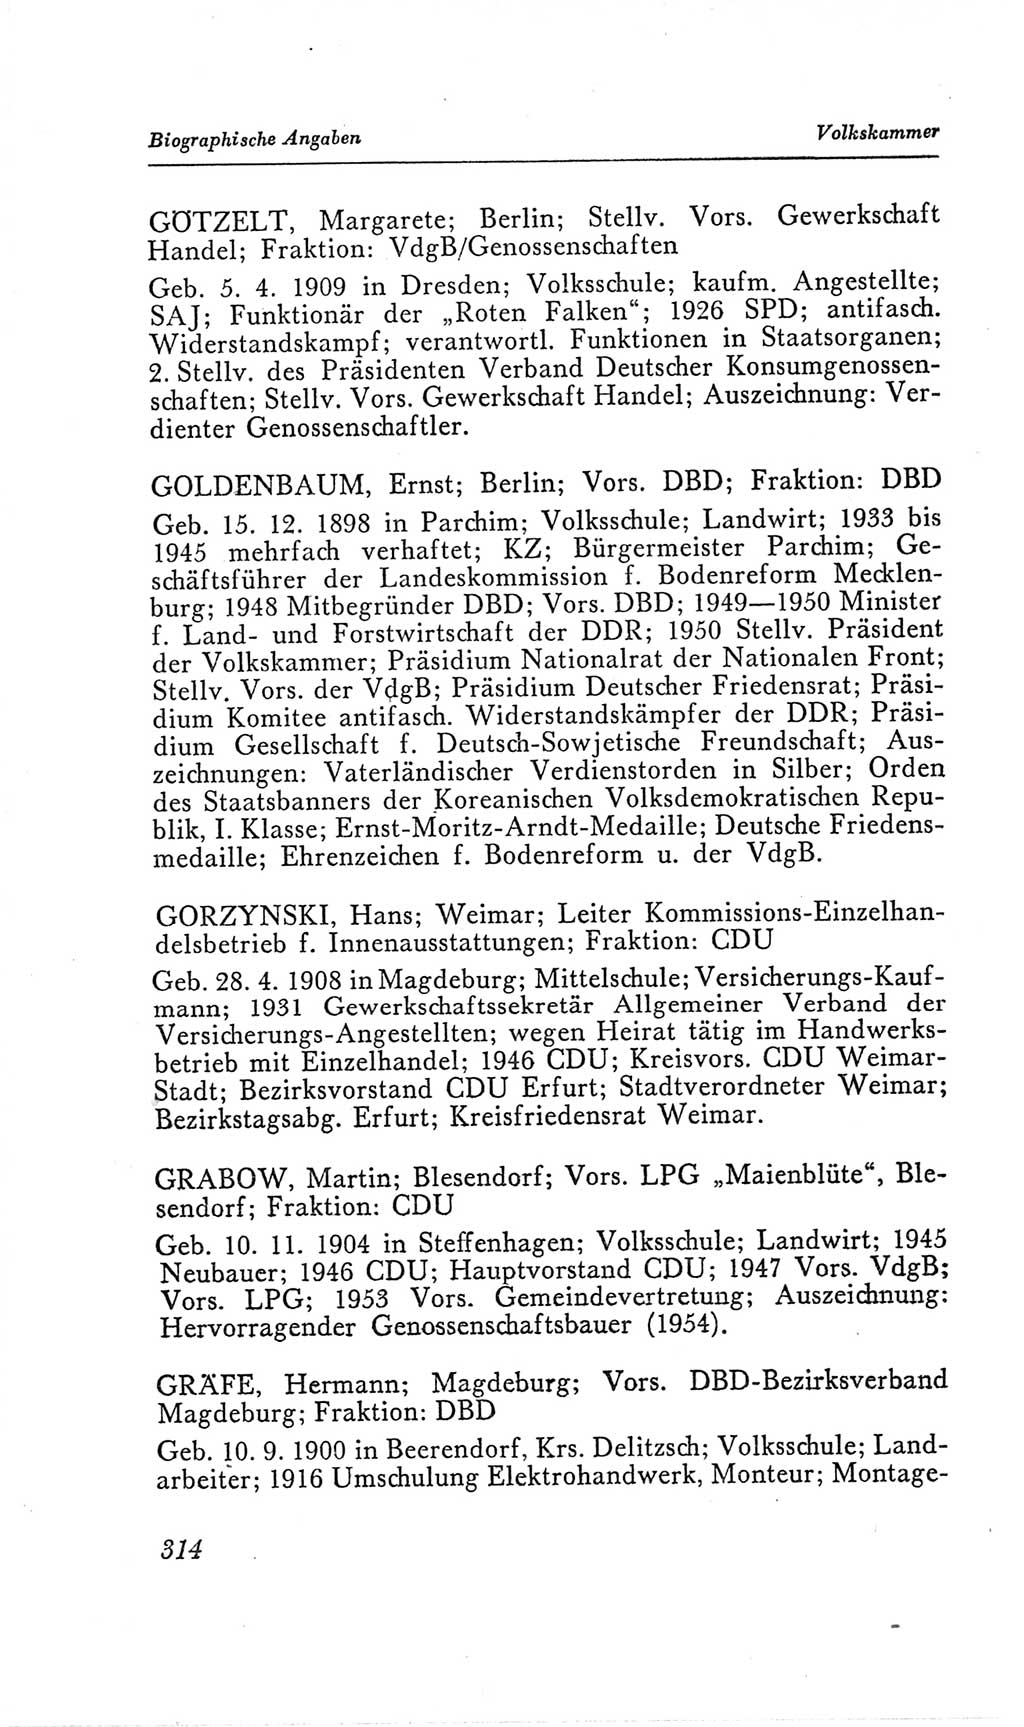 Handbuch der Volkskammer (VK) der Deutschen Demokratischen Republik (DDR), 2. Wahlperiode 1954-1958, Seite 314 (Hdb. VK. DDR, 2. WP. 1954-1958, S. 314)